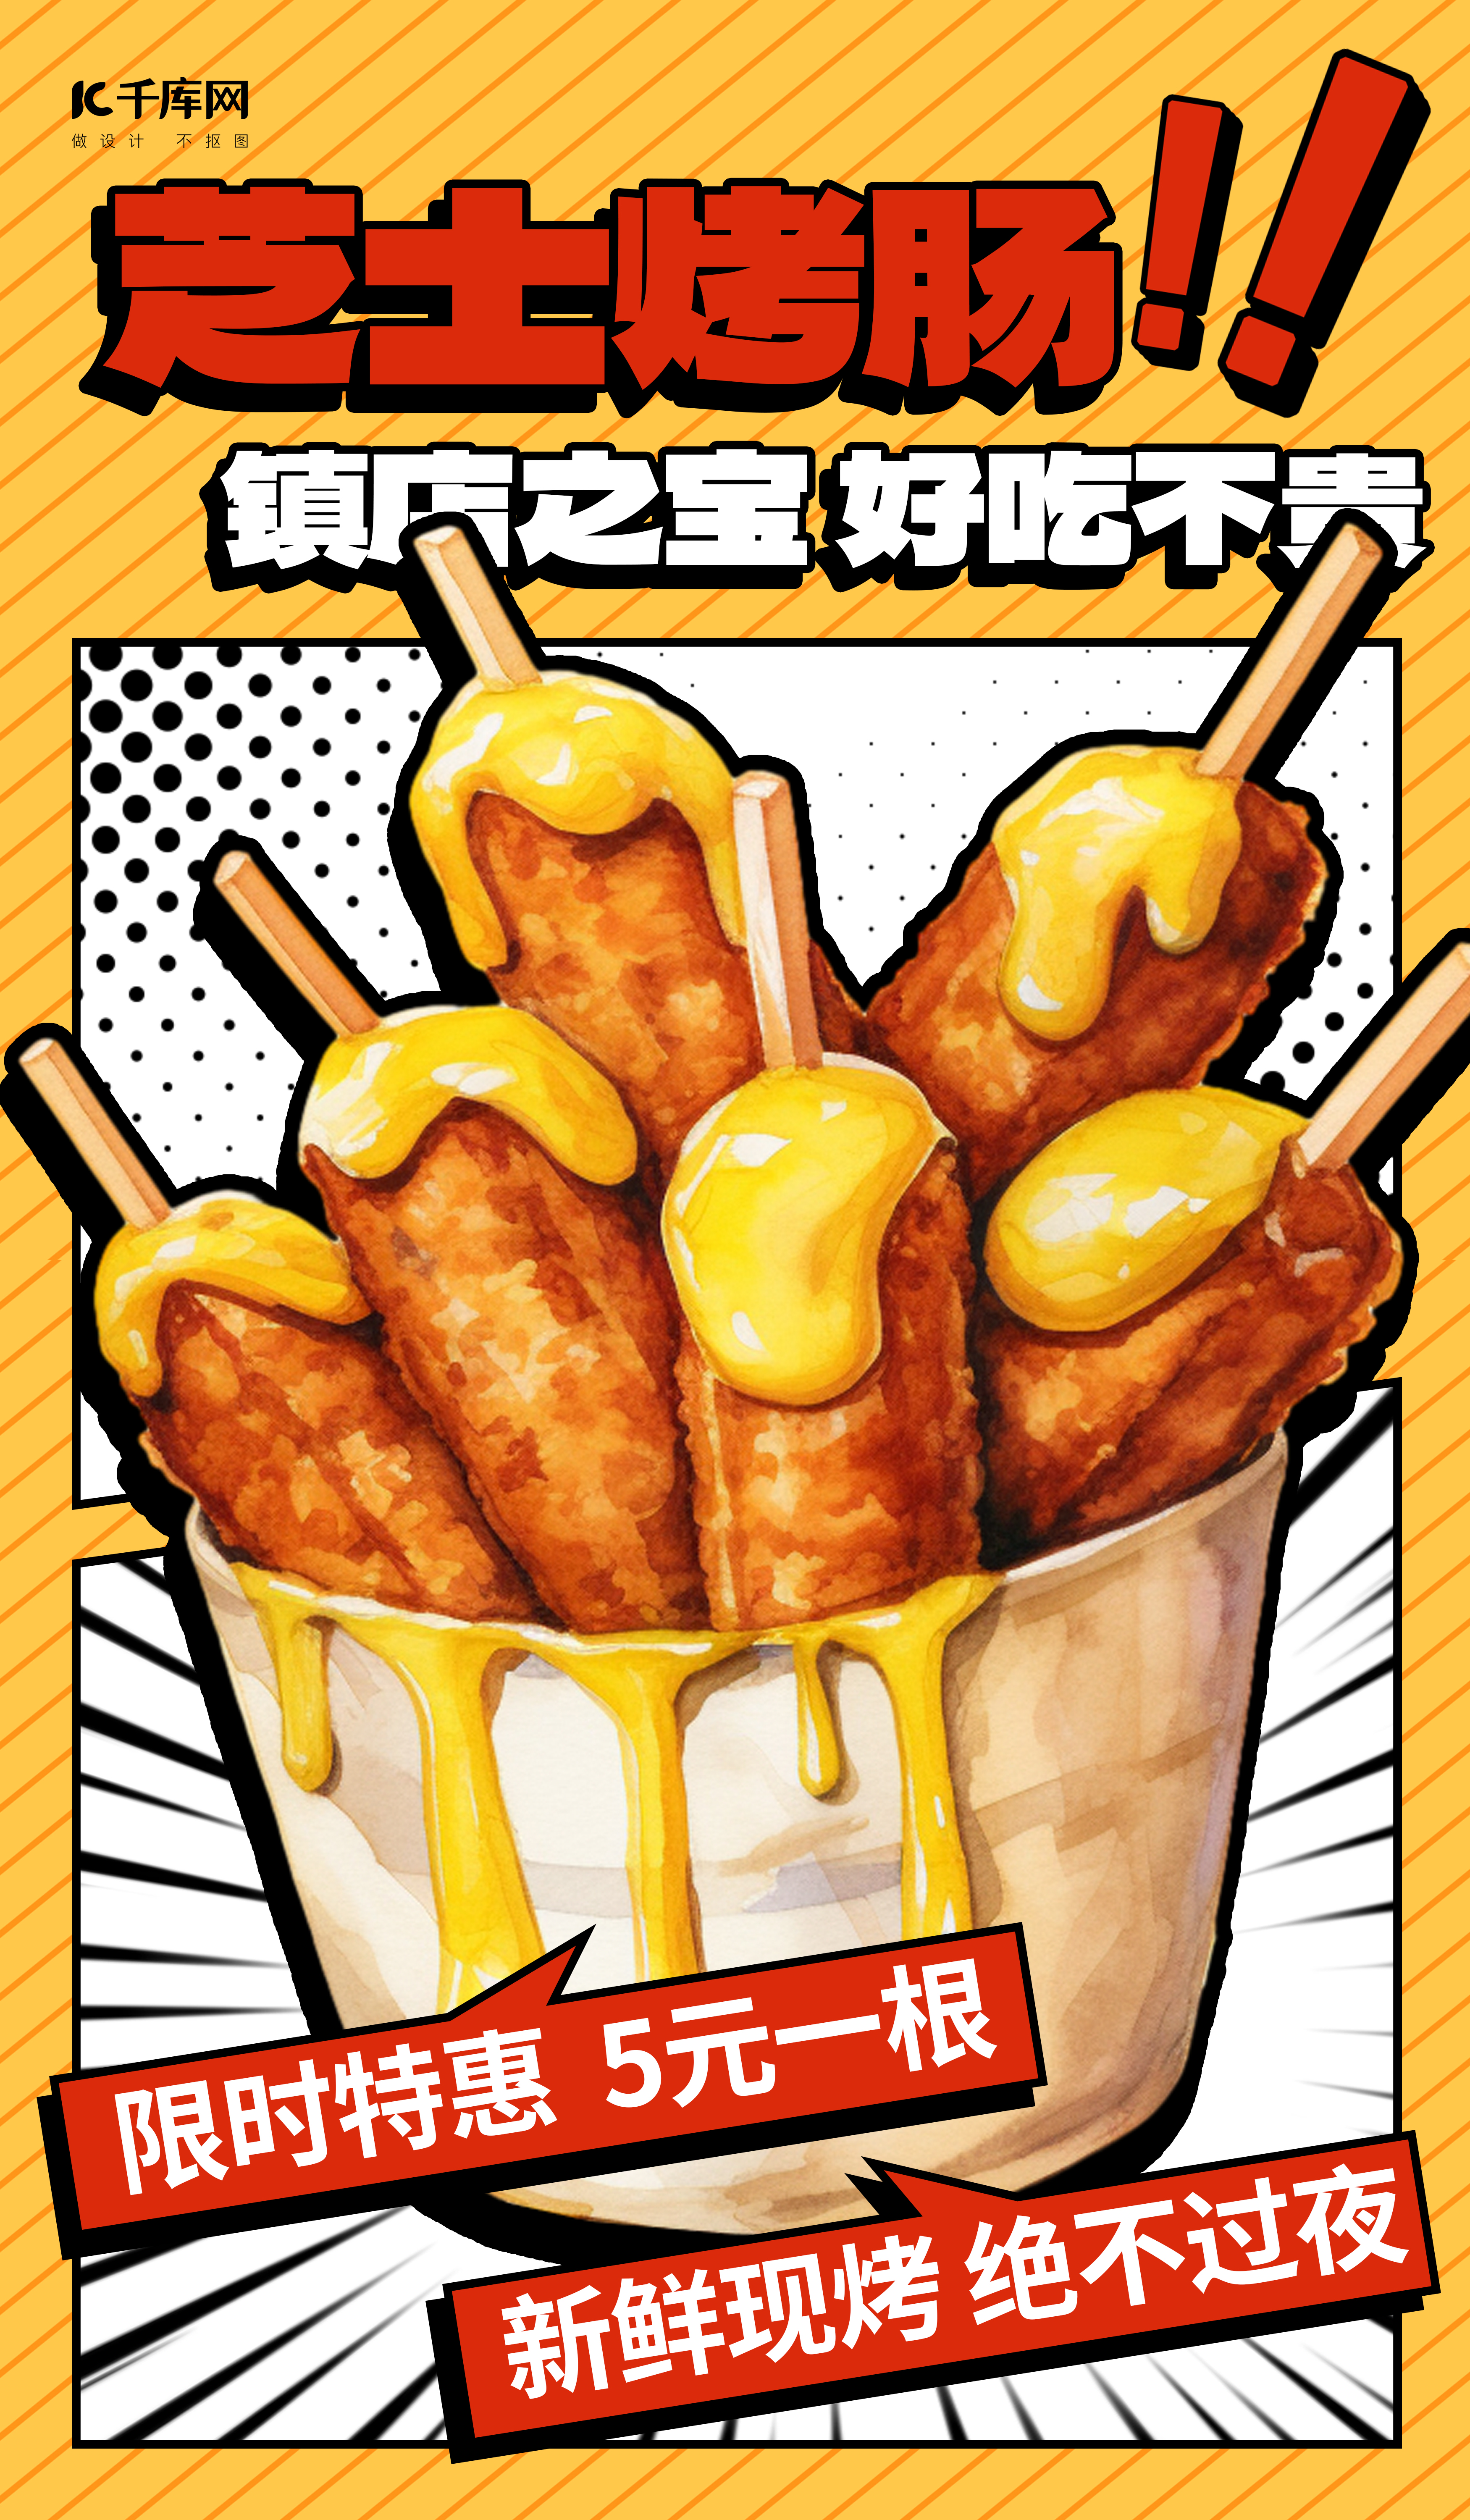 芝士烤肠黄色AIGC广告营销海报图片